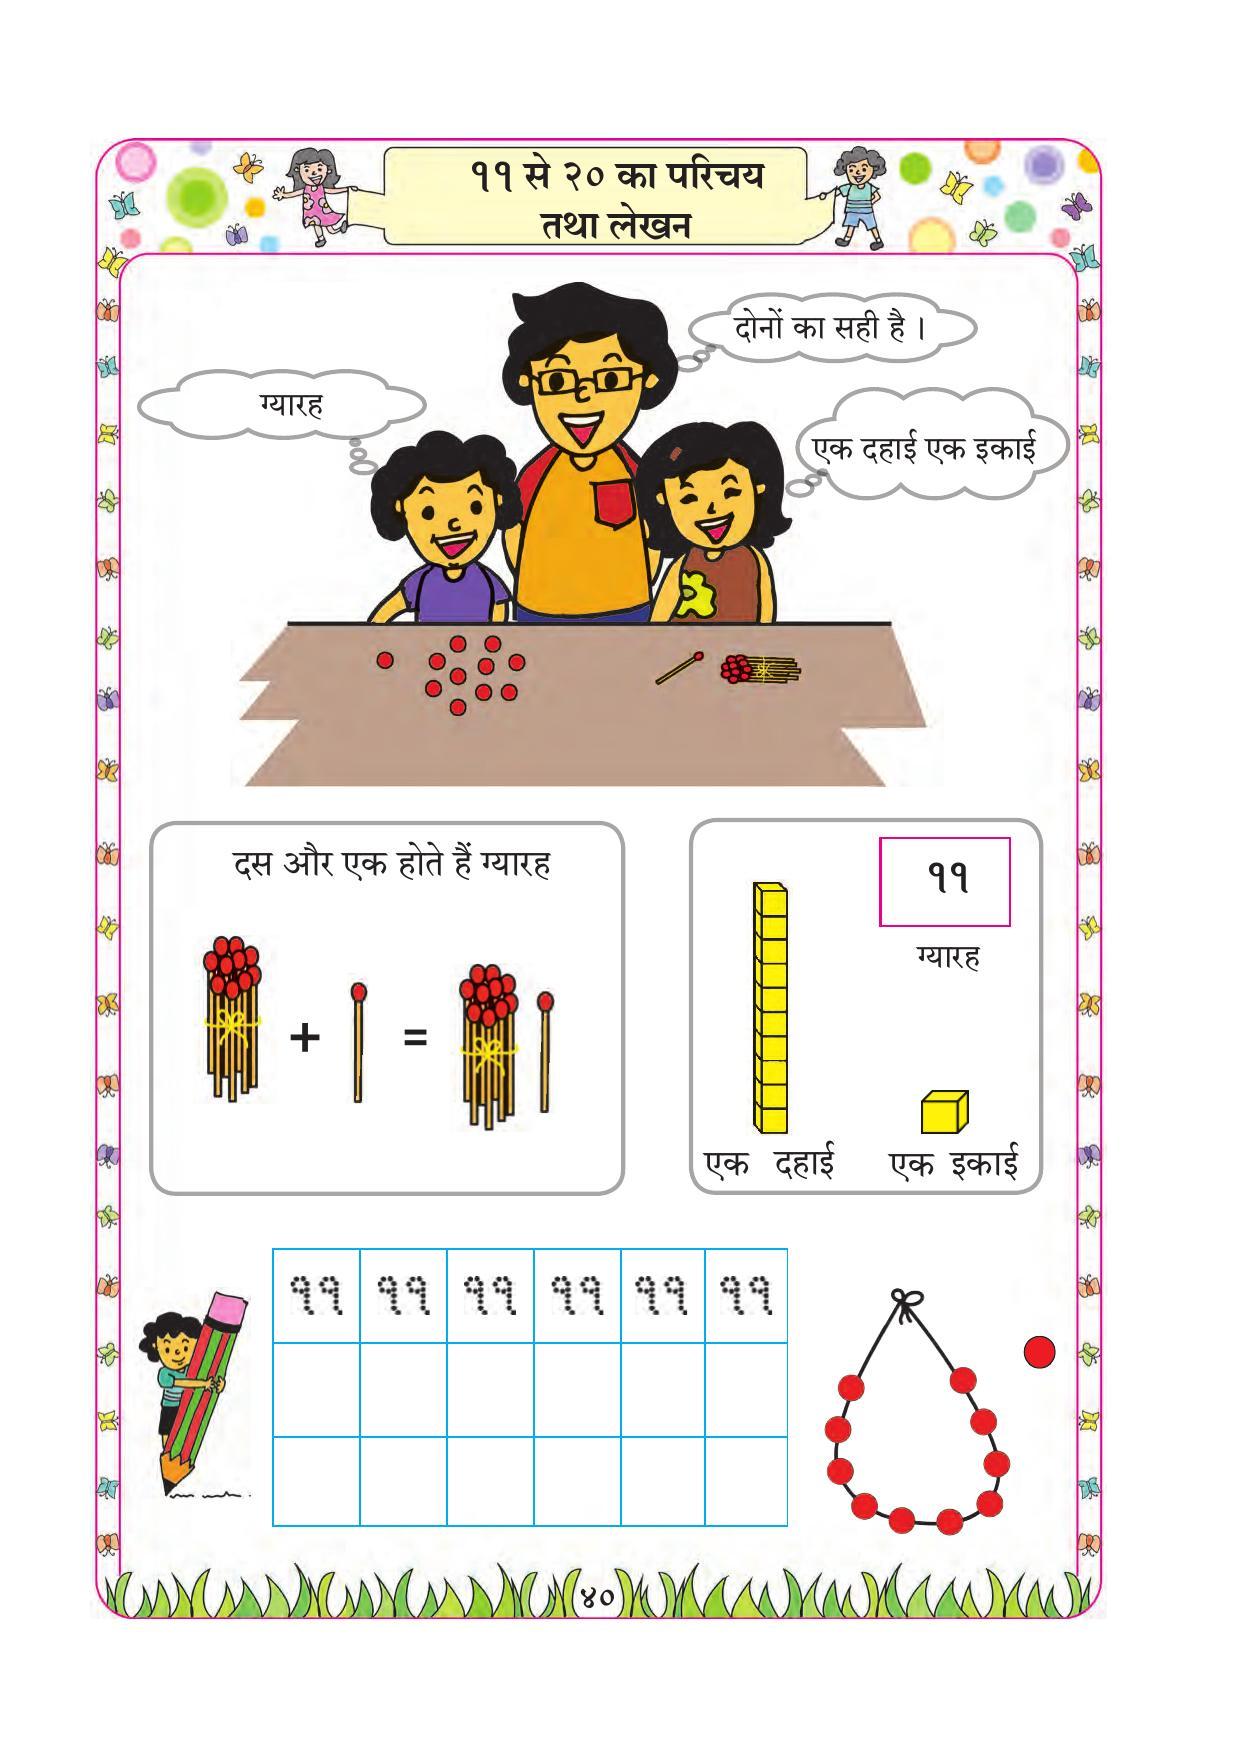 Maharashtra Board Class 1 Maths (Hindi Medium) Textbook - Page 50